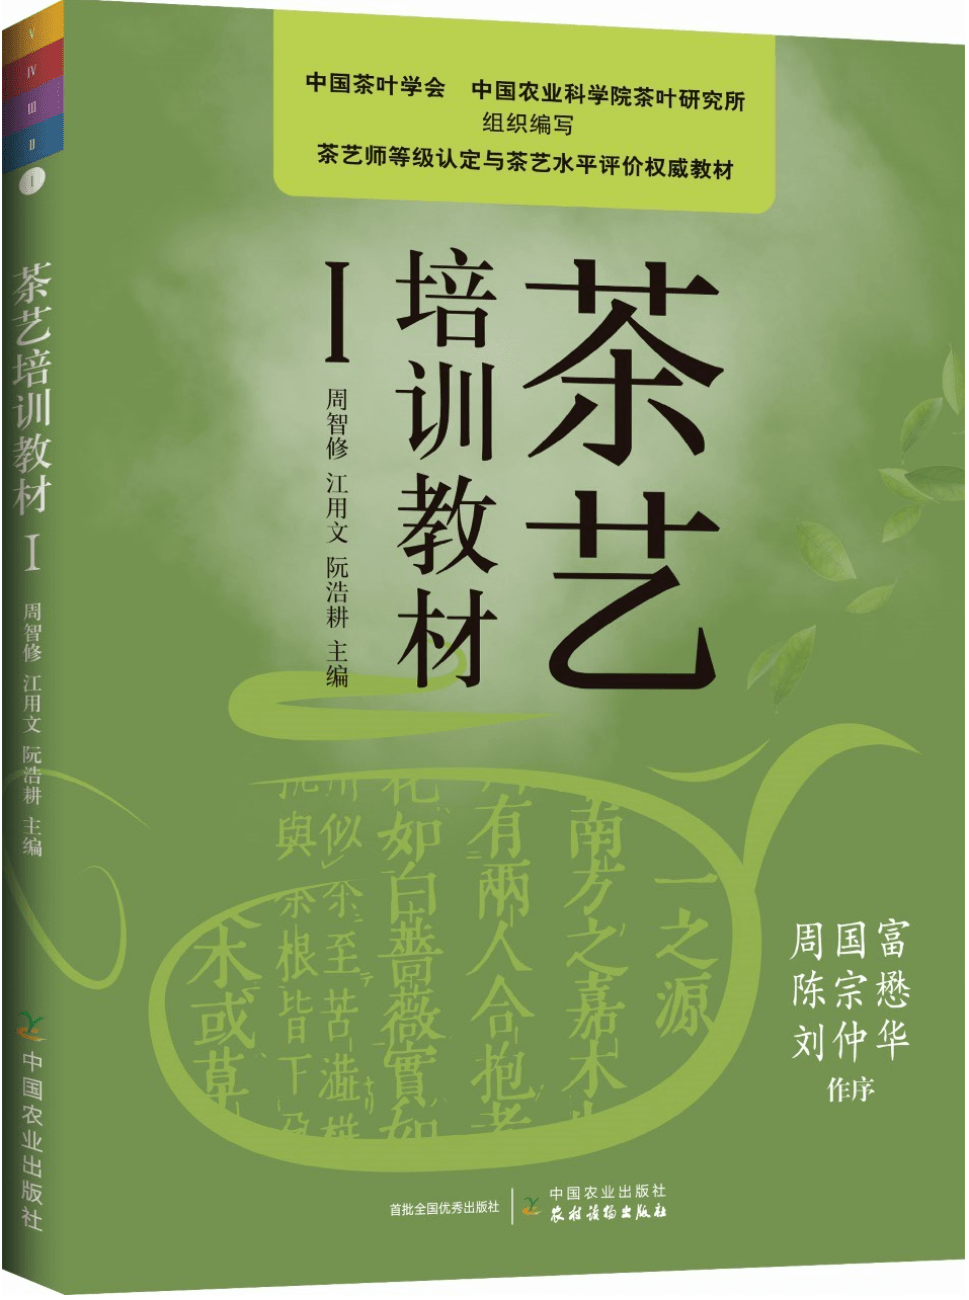 茶科普 | 宋代茶文化的幽雅精致 (一)